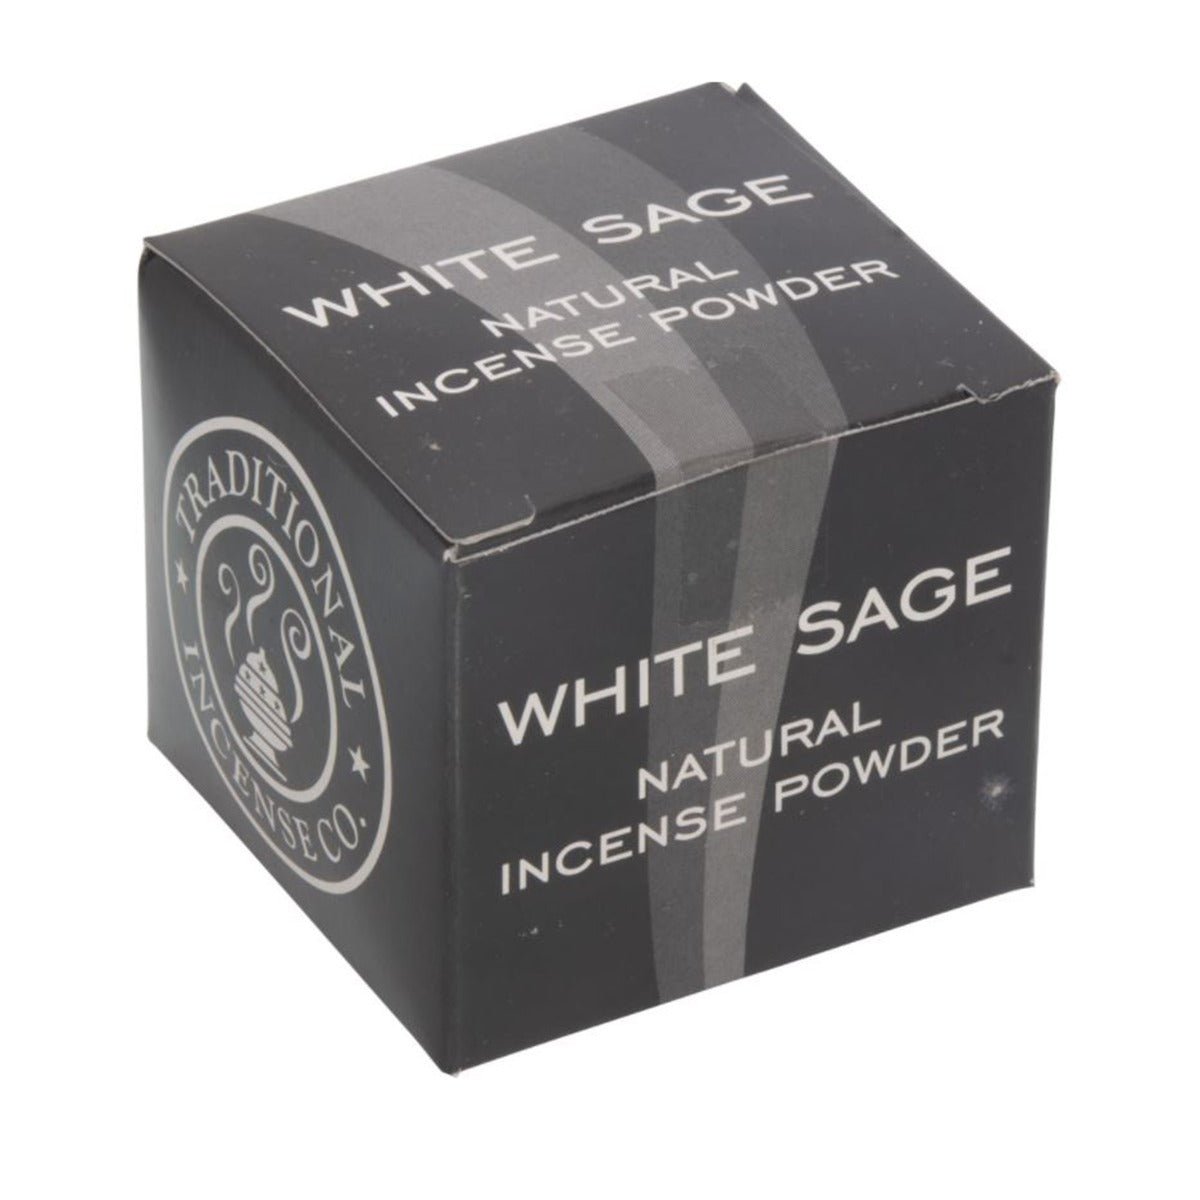 White Sage Powder Incense - 13 Moons